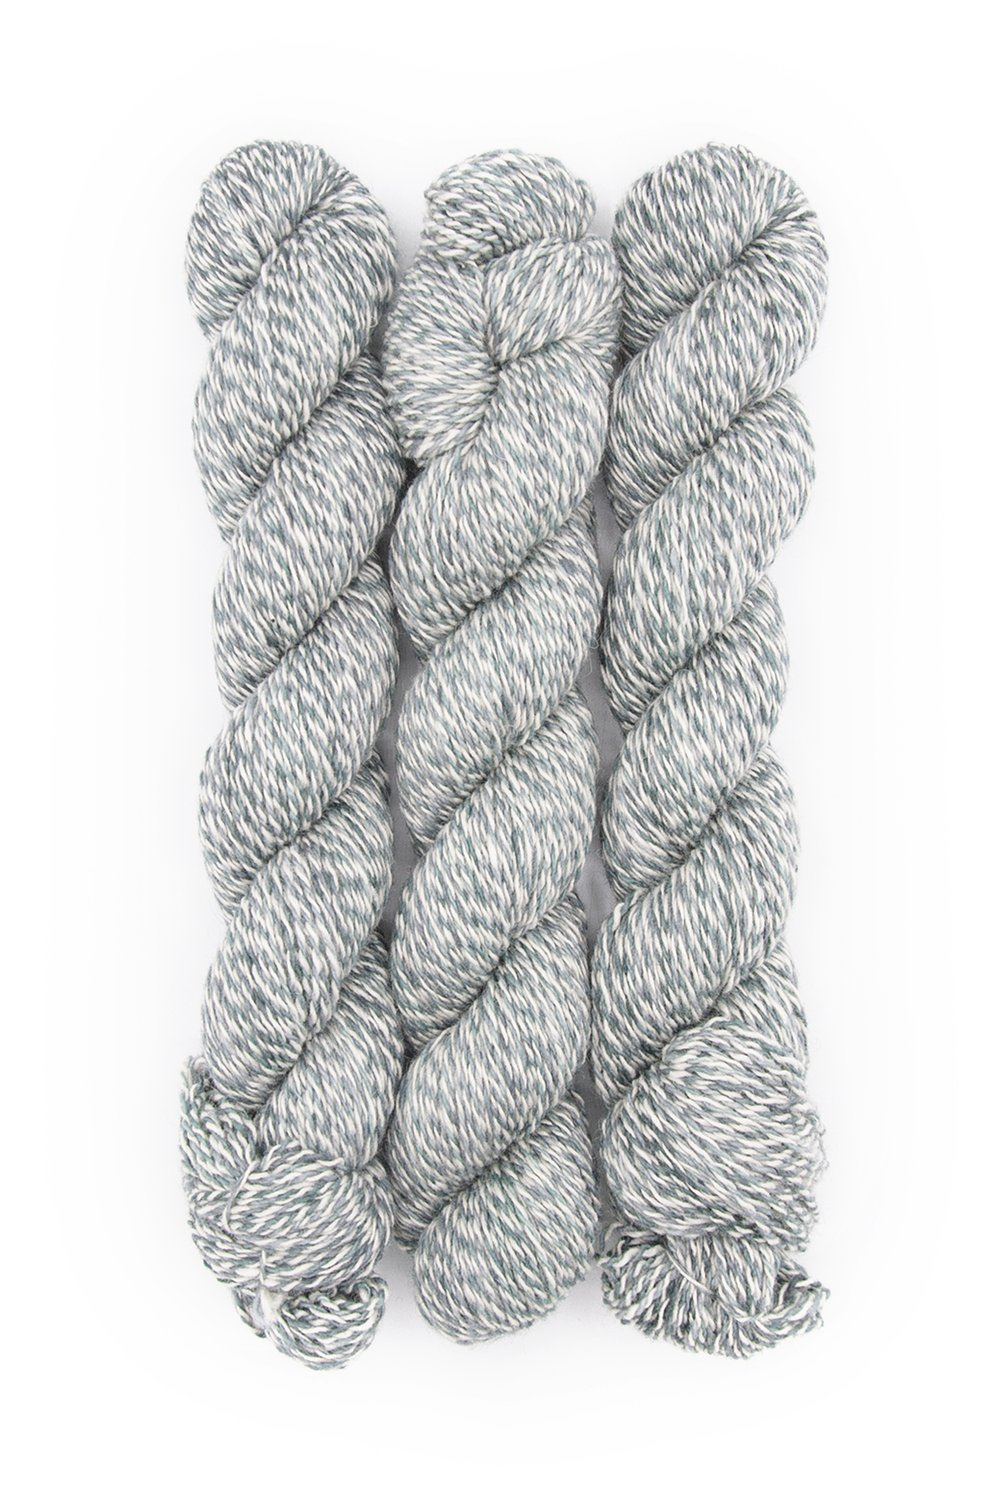 Plied Yarns North Ave Fingering Wool Knitting Yarn